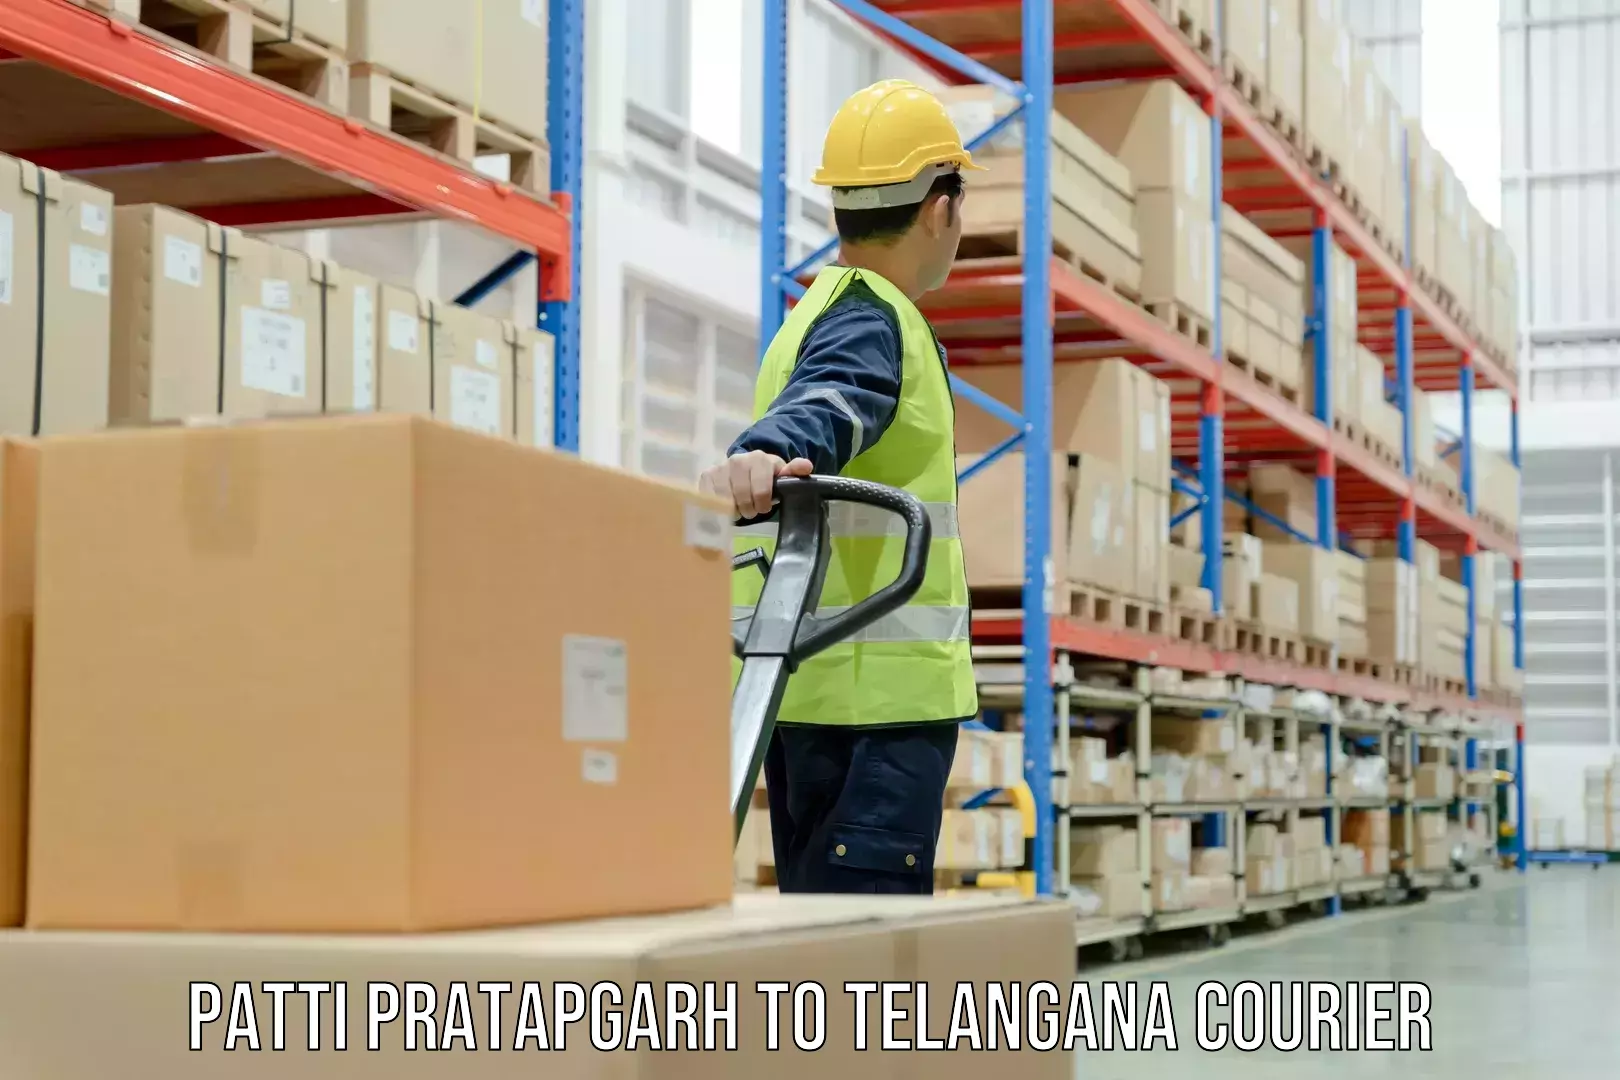 Multi-service courier options Patti Pratapgarh to Telangana